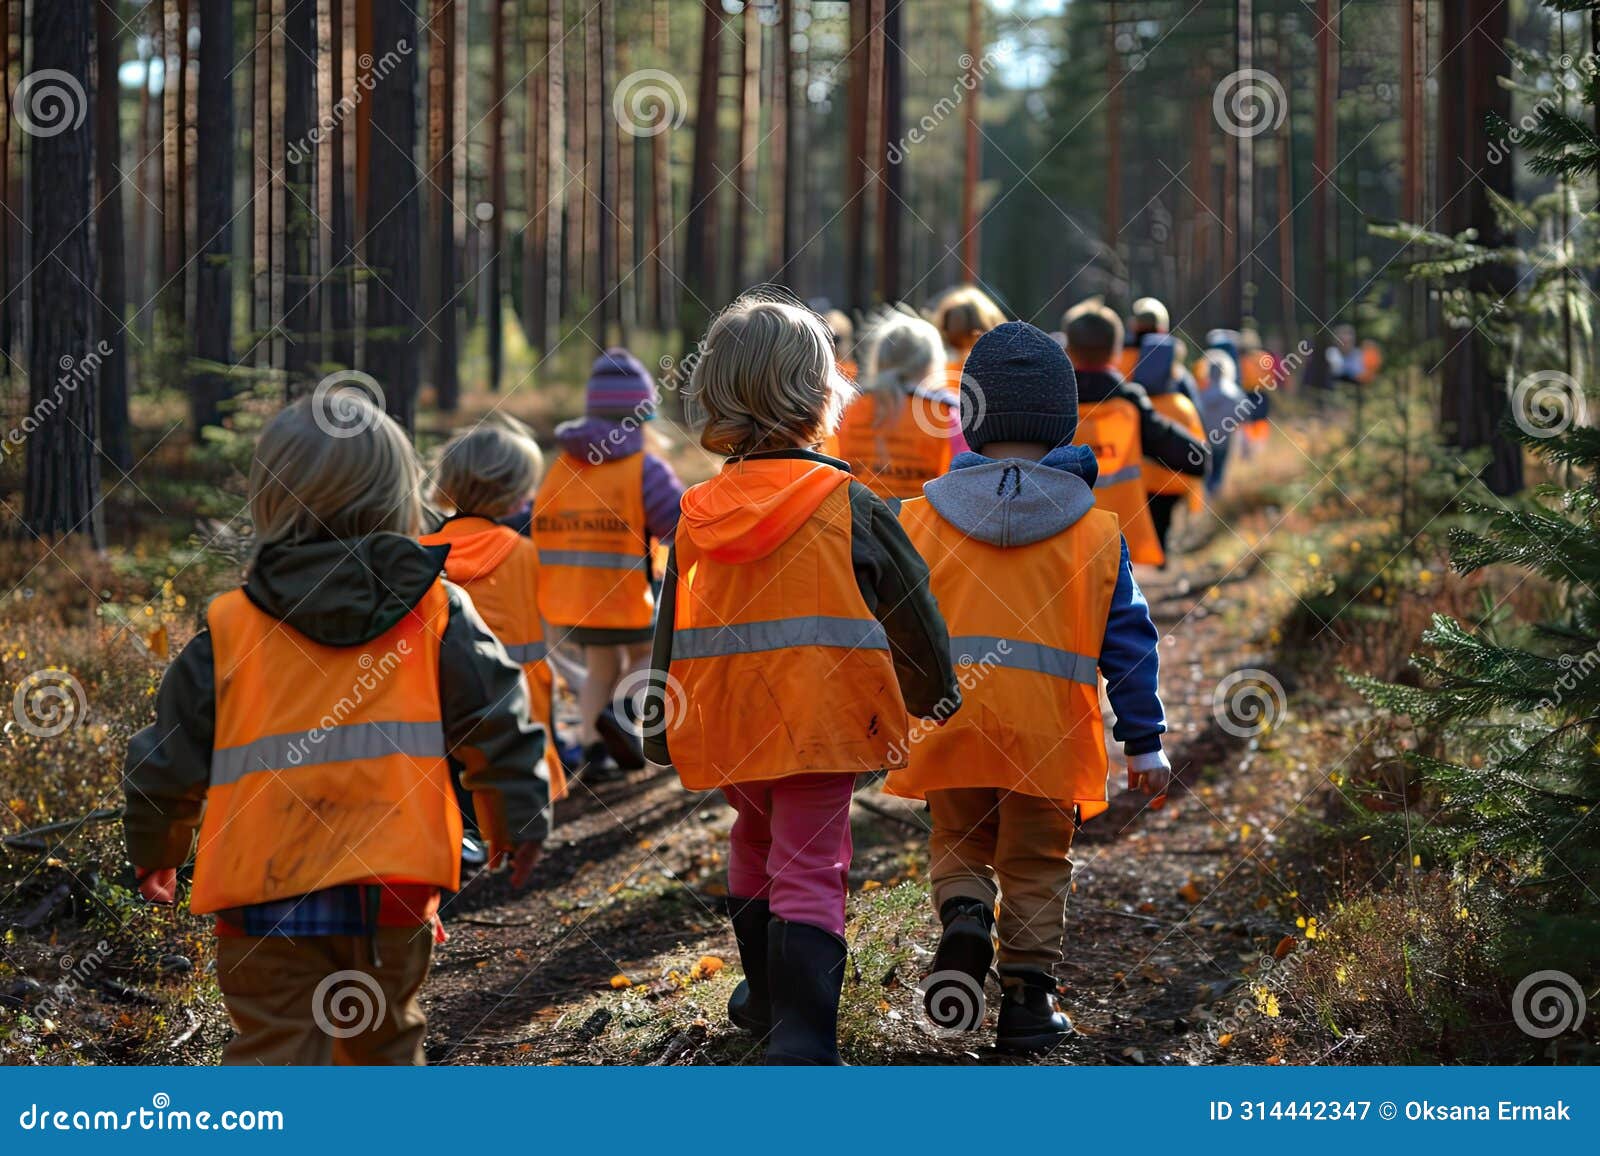 kindergarten in forest, children walking with tutors in wild park, finnish forest school, forest kindergarten